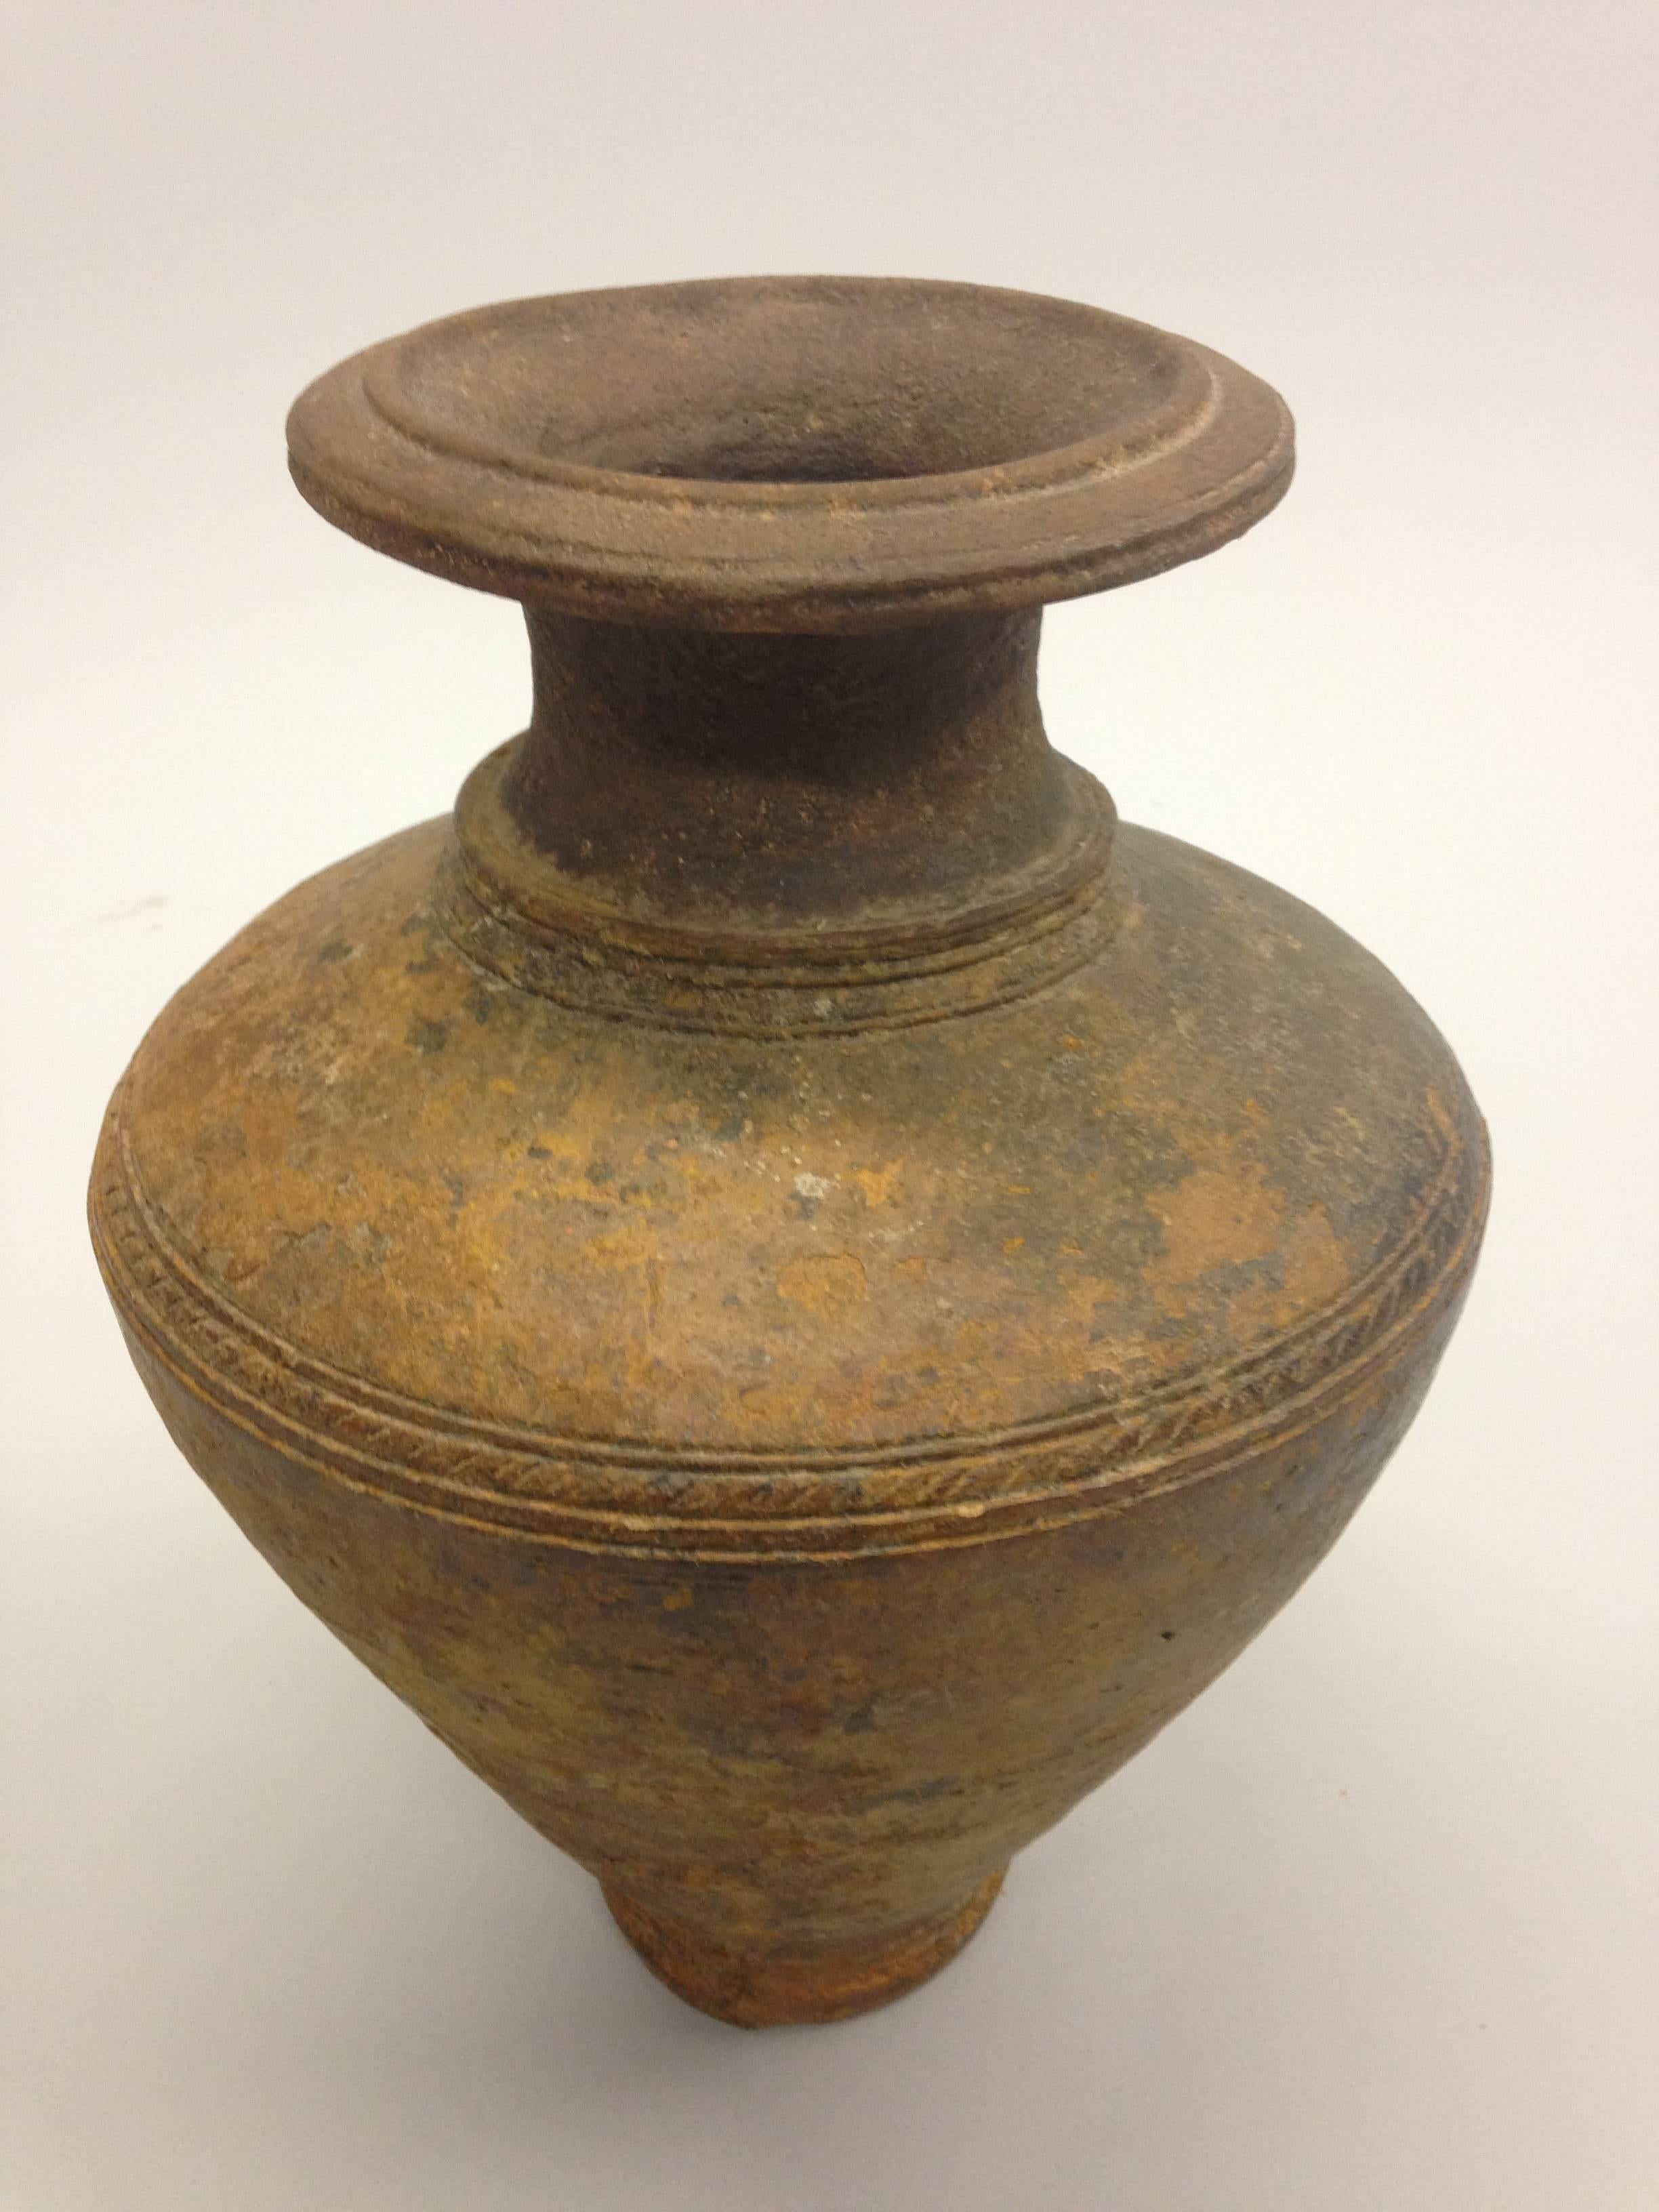 Eine Khmer-Urne oder -Vase mit nüchterner, klassischer Form aus der Khmer-Region des alten Kambodscha. Nüchterne Stücke in klassischer Form wie diese passen sehr gut zu nüchternen, modernen oder Mid-Century Modern-Einrichtungen. 

Referenzen: Antike